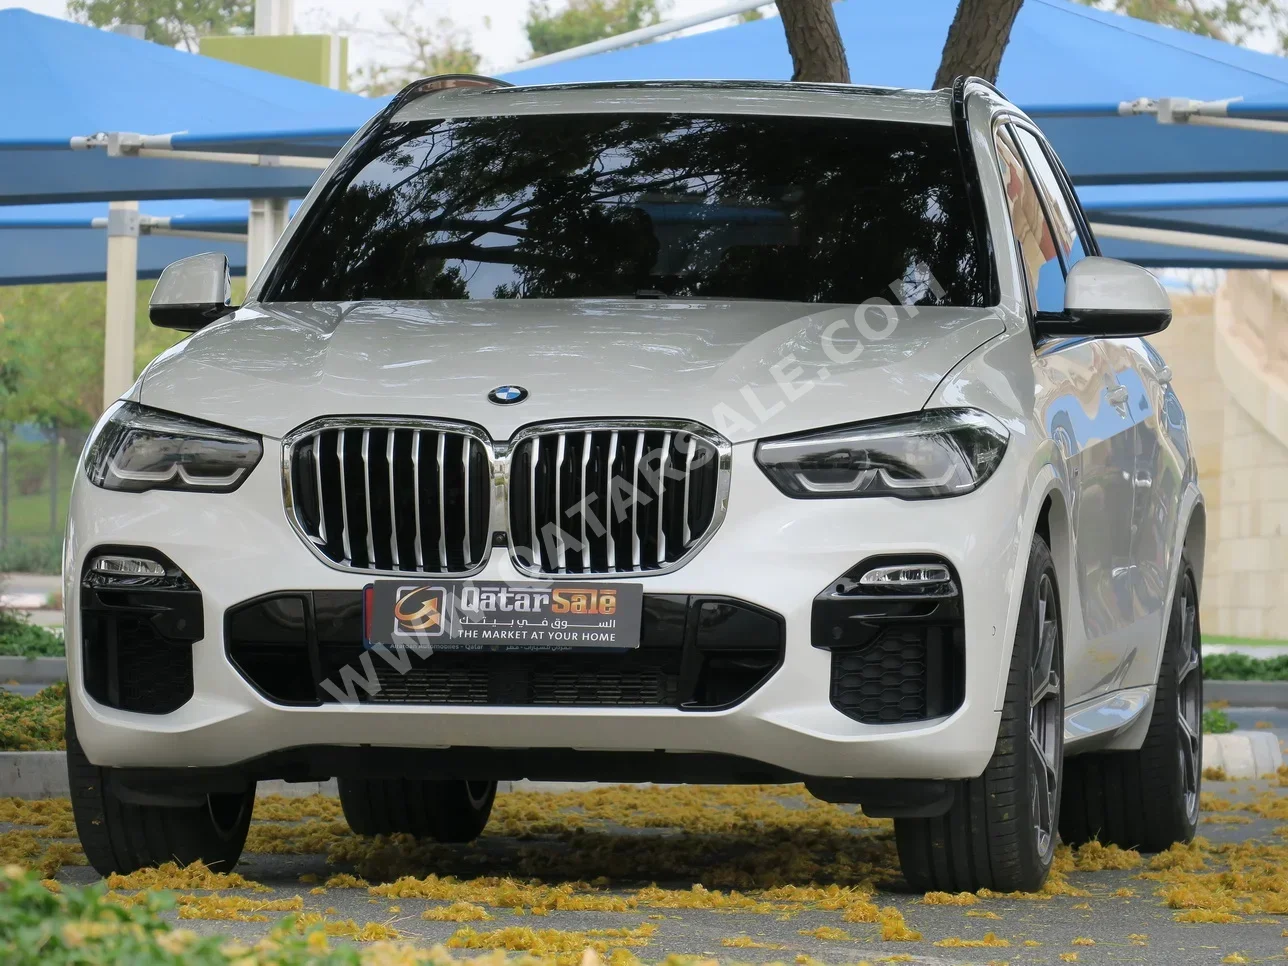 BMW  X-Series  X5 40i  2022  Automatic  36,000 Km  6 Cylinder  Four Wheel Drive (4WD)  SUV  White  With Warranty